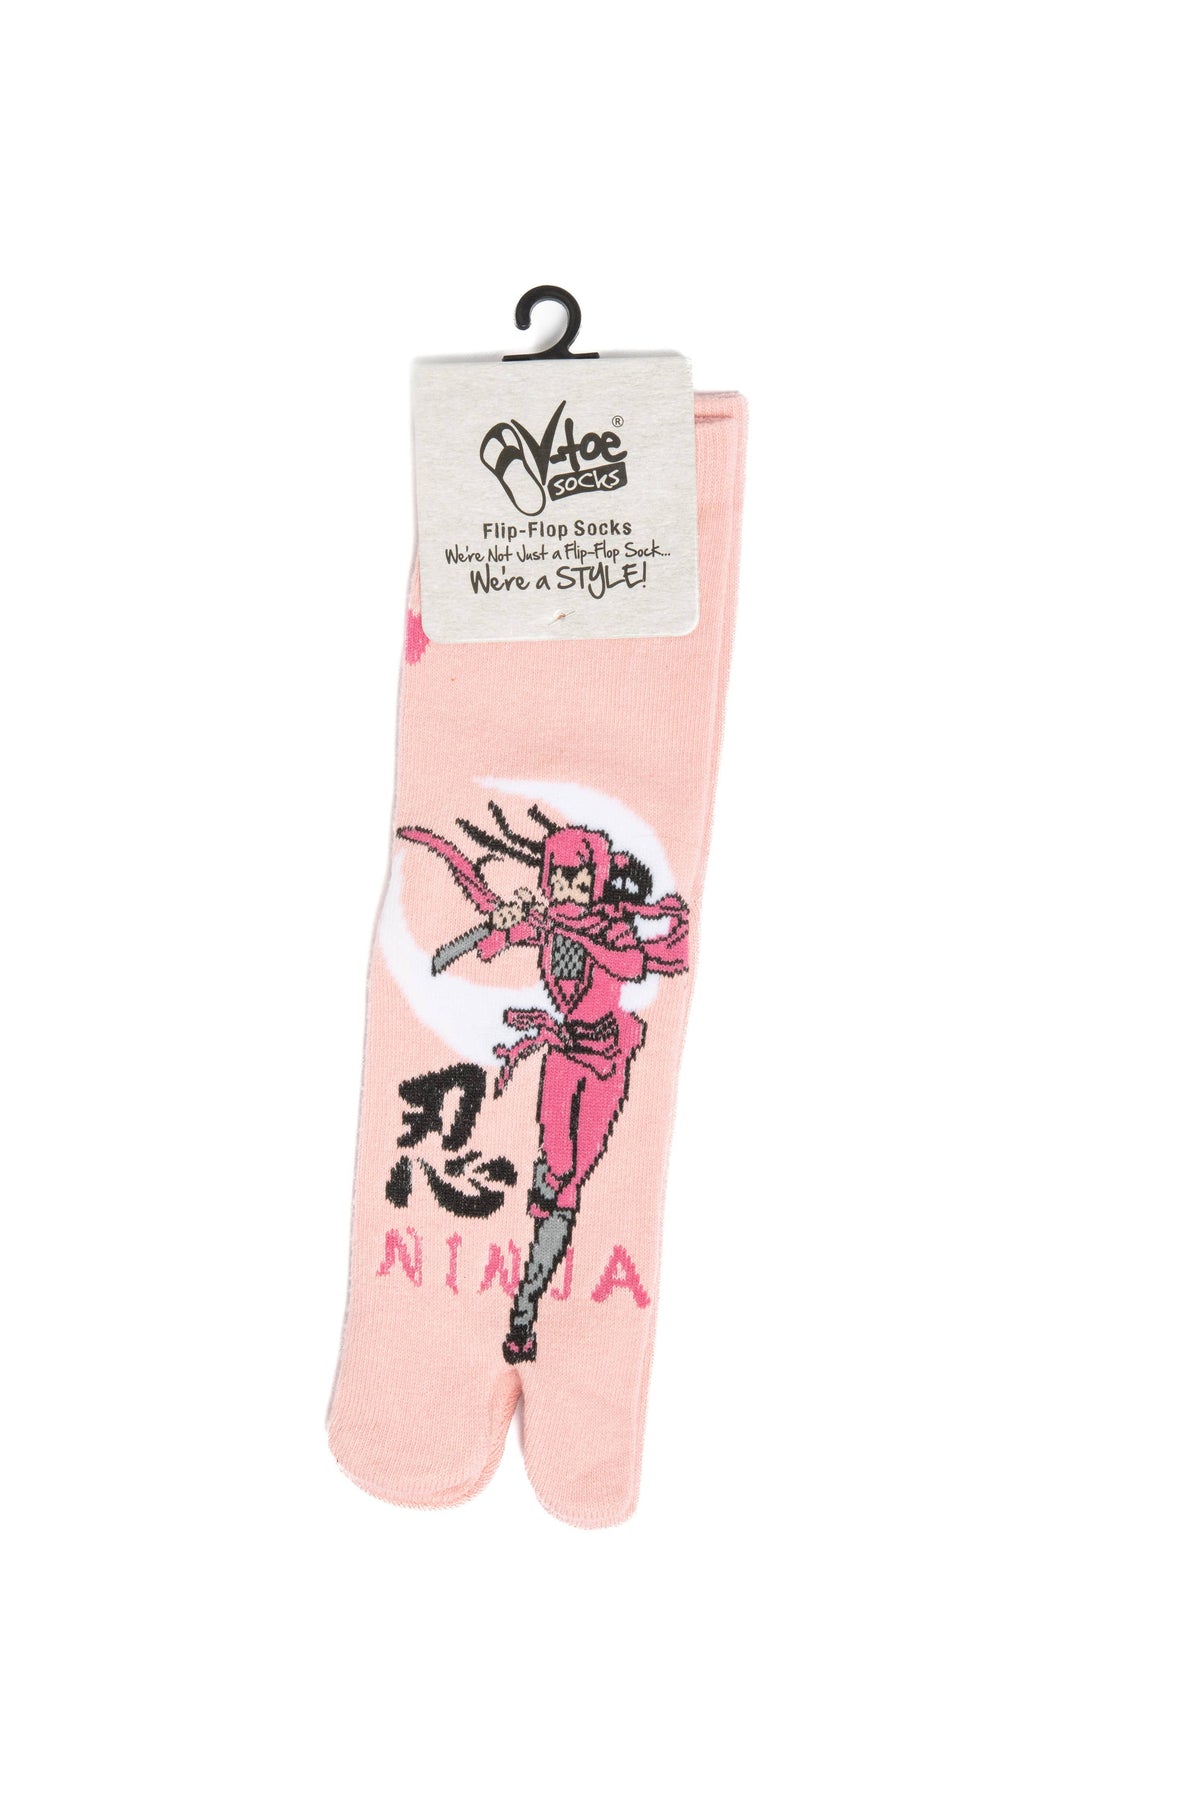 V-Toe Split Toe Novelty Socks Ninja Pink Big Toe Tabi